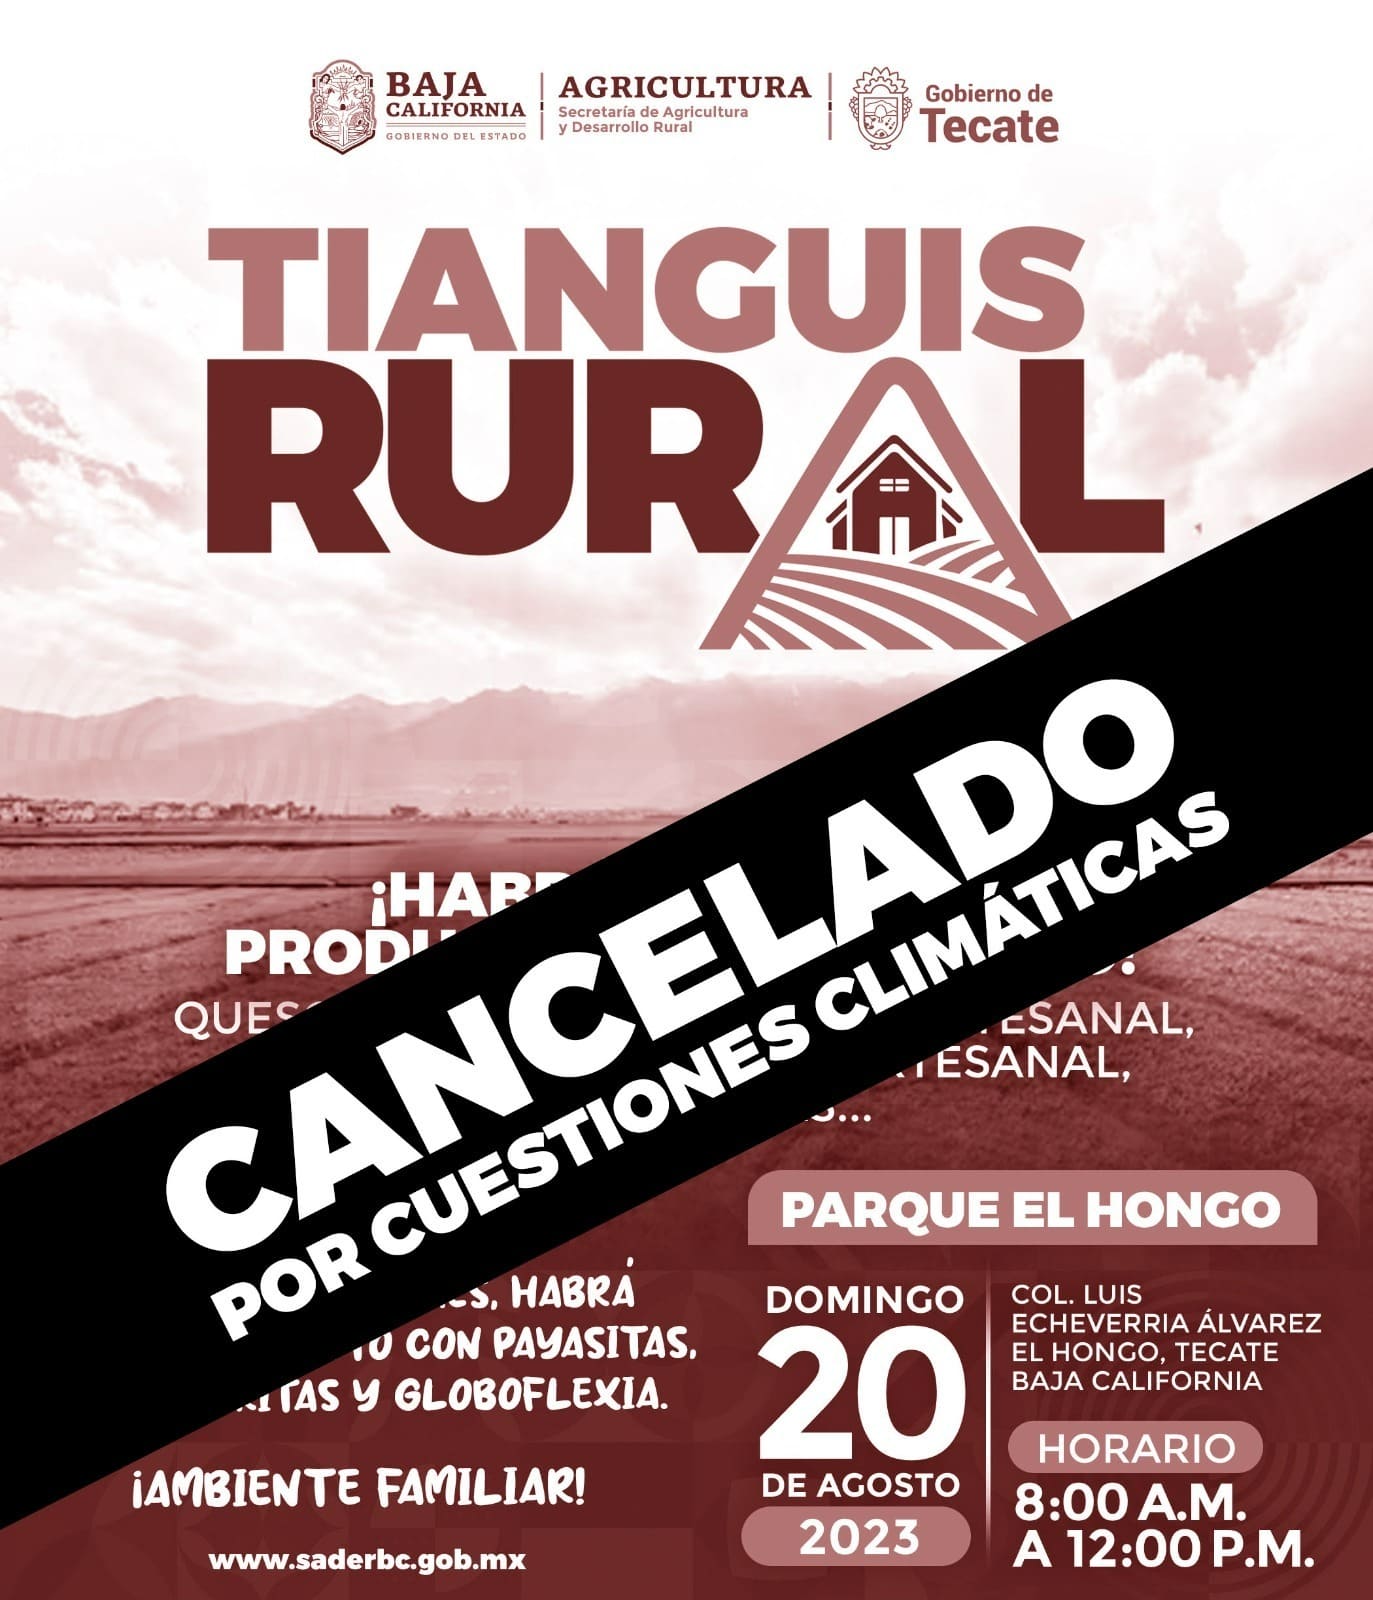 POSPONE SADER BC TIANGUIS RURAL EN EL HONGO POR CONDICIONES CLIMÁTICAS